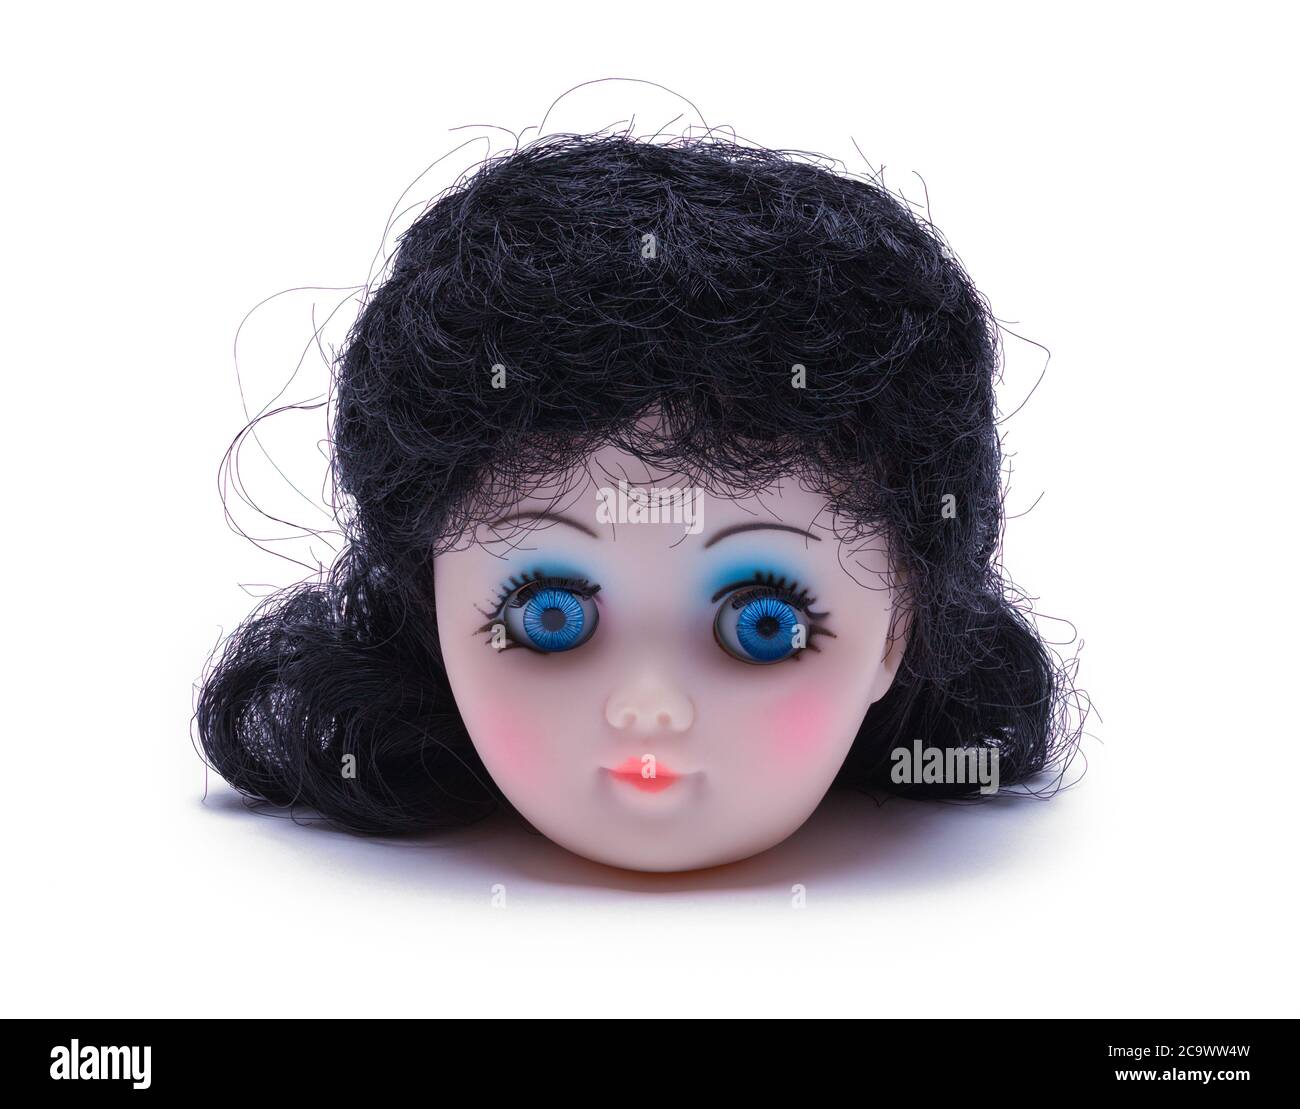 Spielzeug Puppe Kopf isoliert auf weißem Hintergrund. Stockfoto